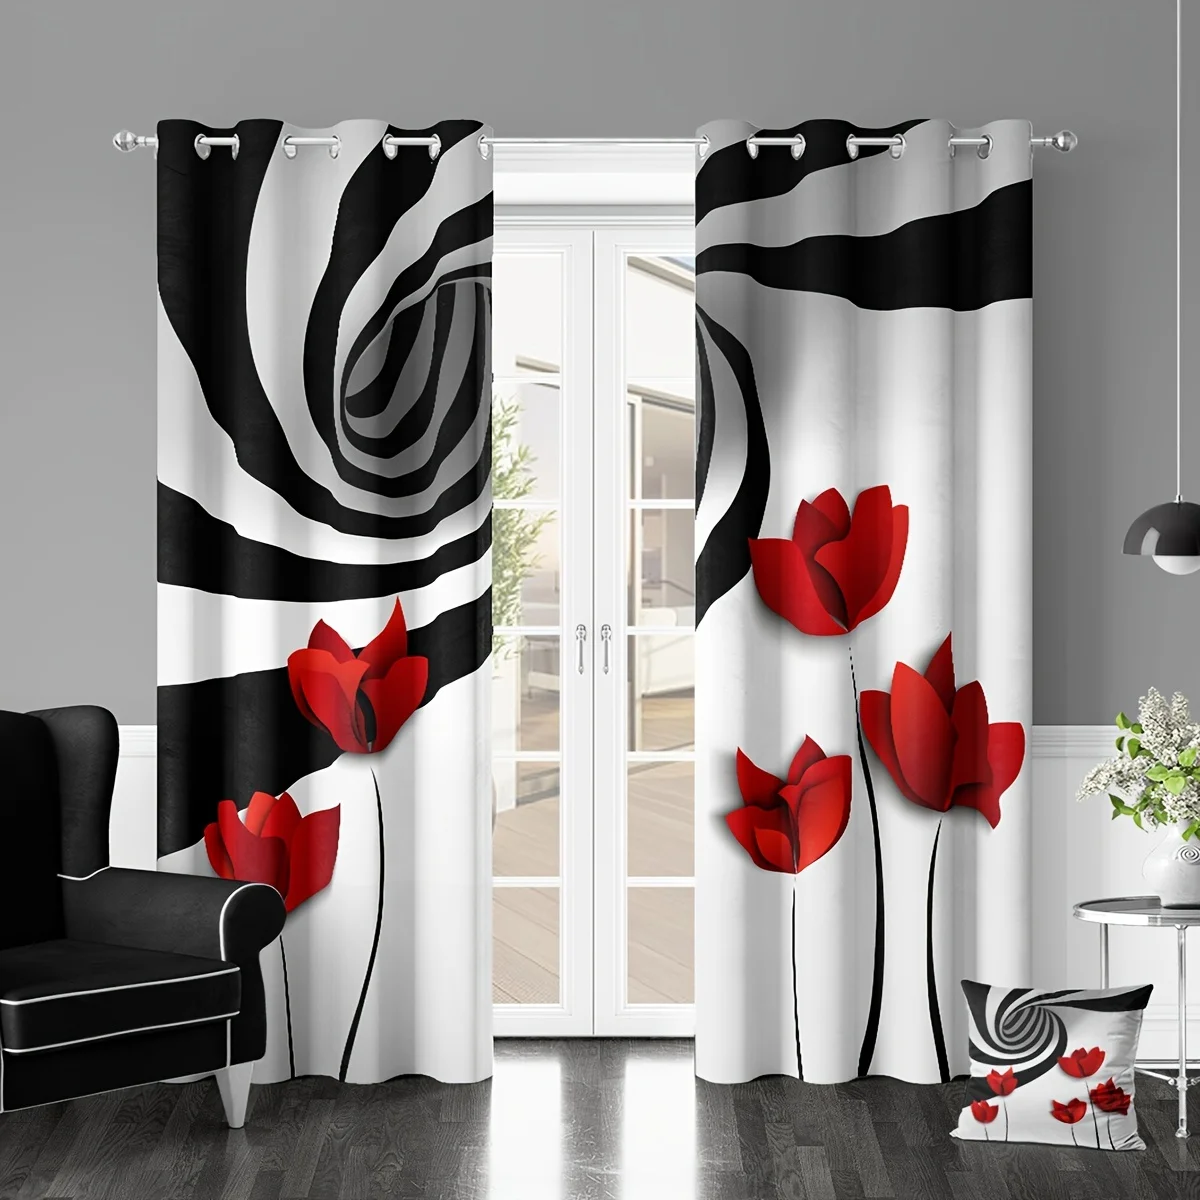 

Красная роза до вашего дома с этими яркими абстрактными художественными шторами, спальни, гостиной, оконные шторы, 2 шт. с 12 крючками